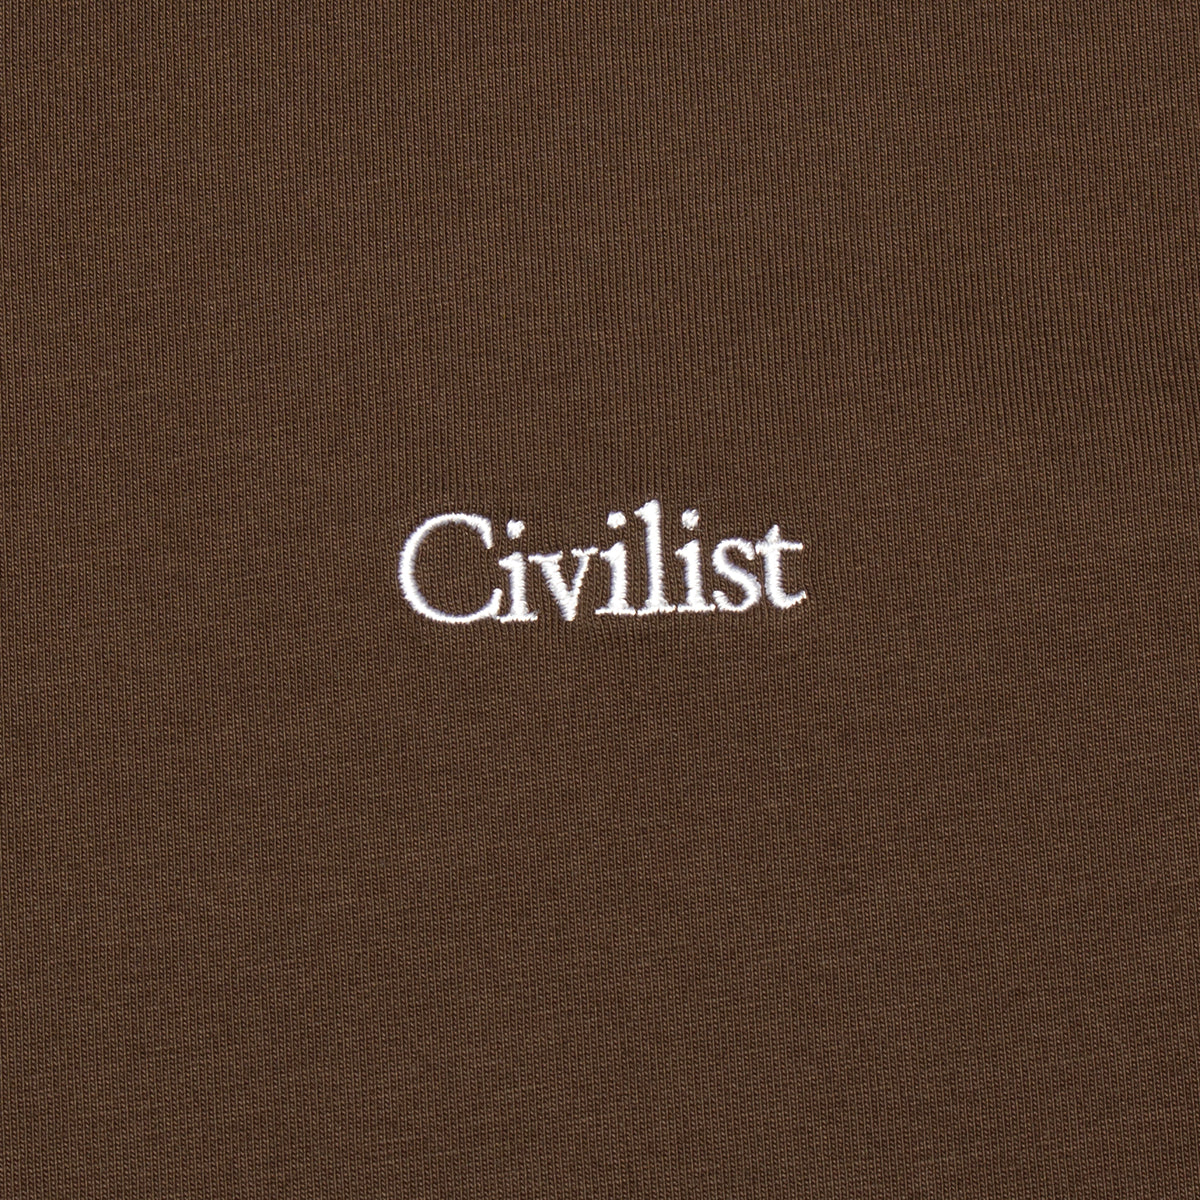 Civilist | Mini Logo T-Shirt Color : Brown